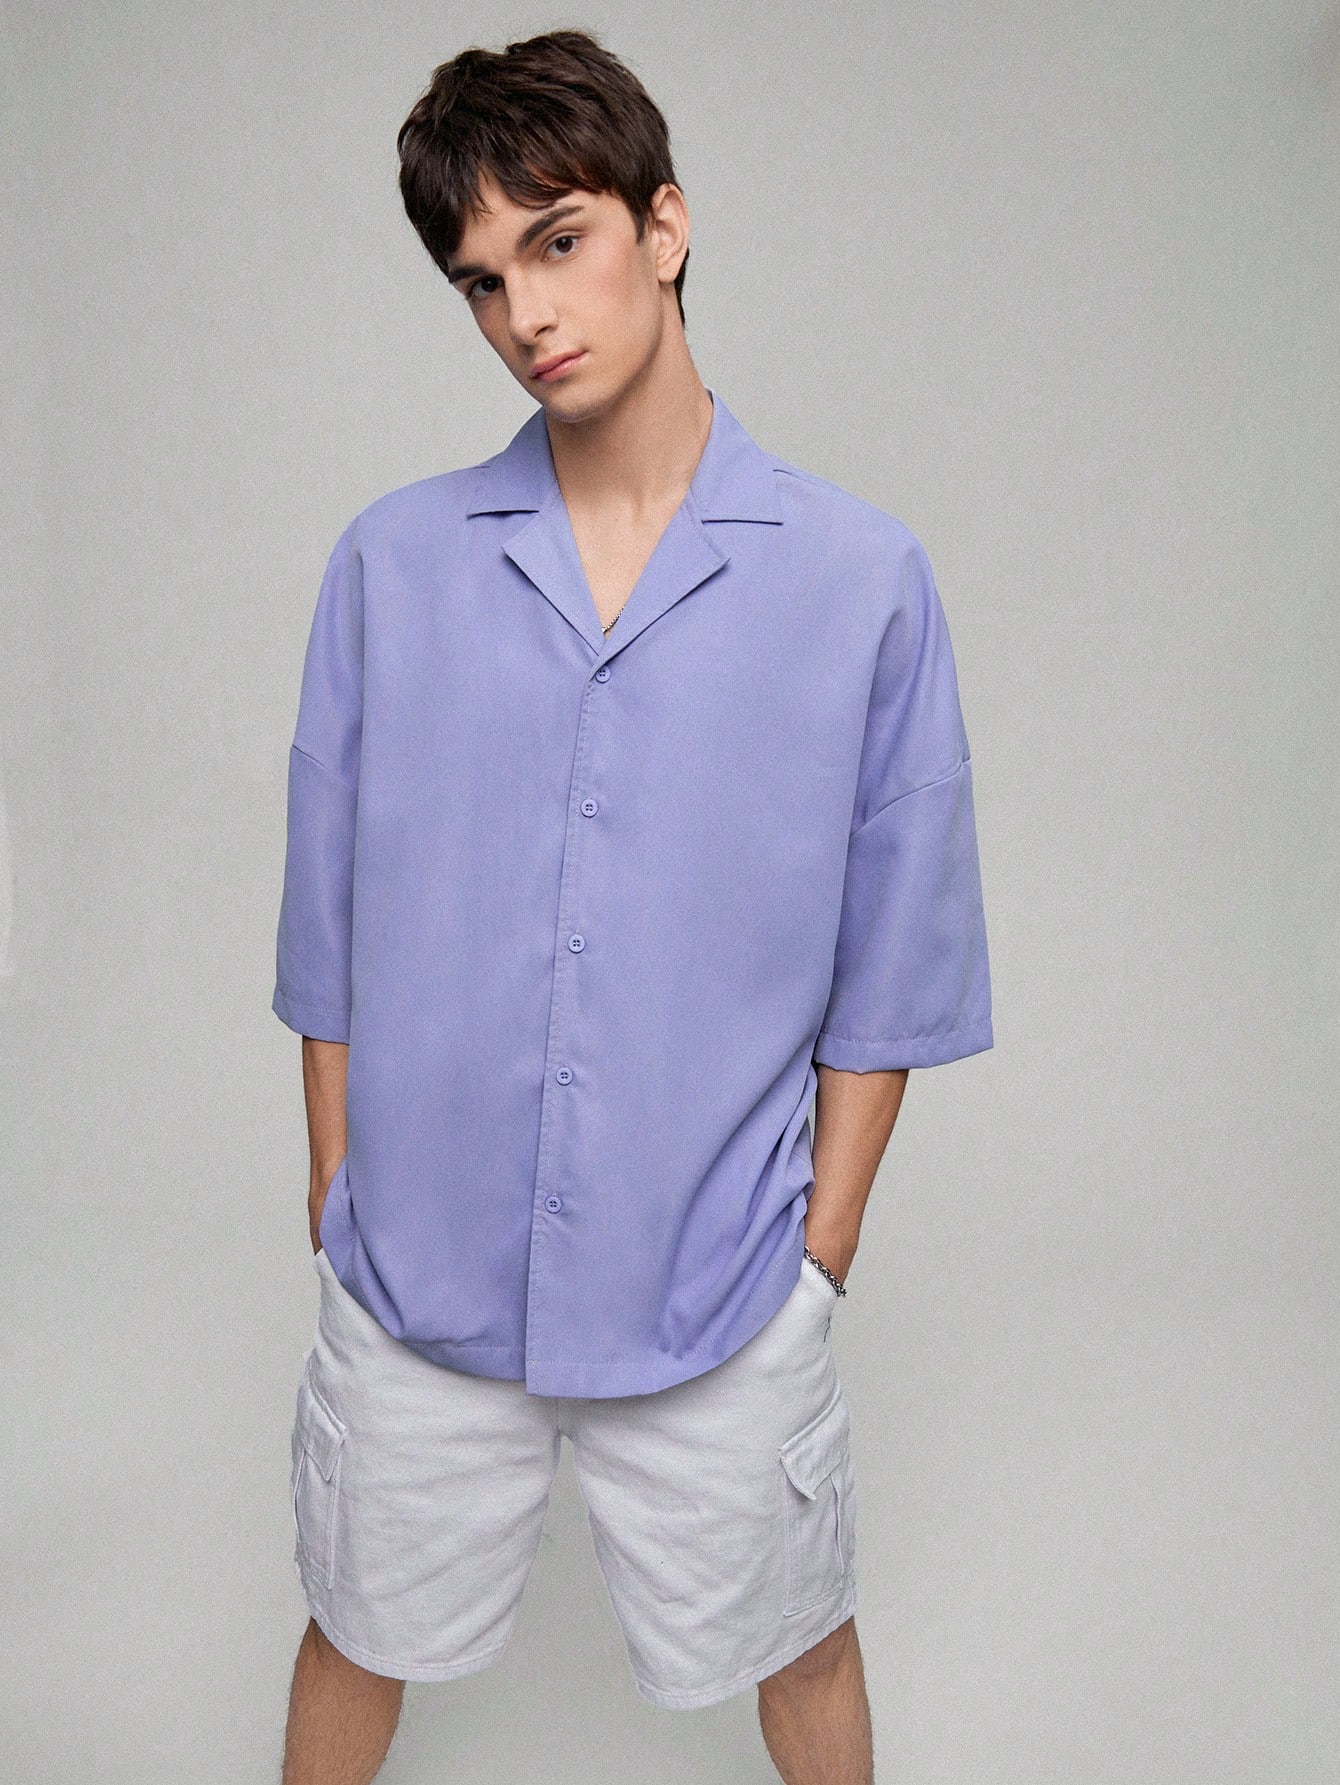 Мужская однотонная рубашка с заниженными плечами Manfinity, фиолетовый рубашка с заниженными плечами и воротником 70 21 белый